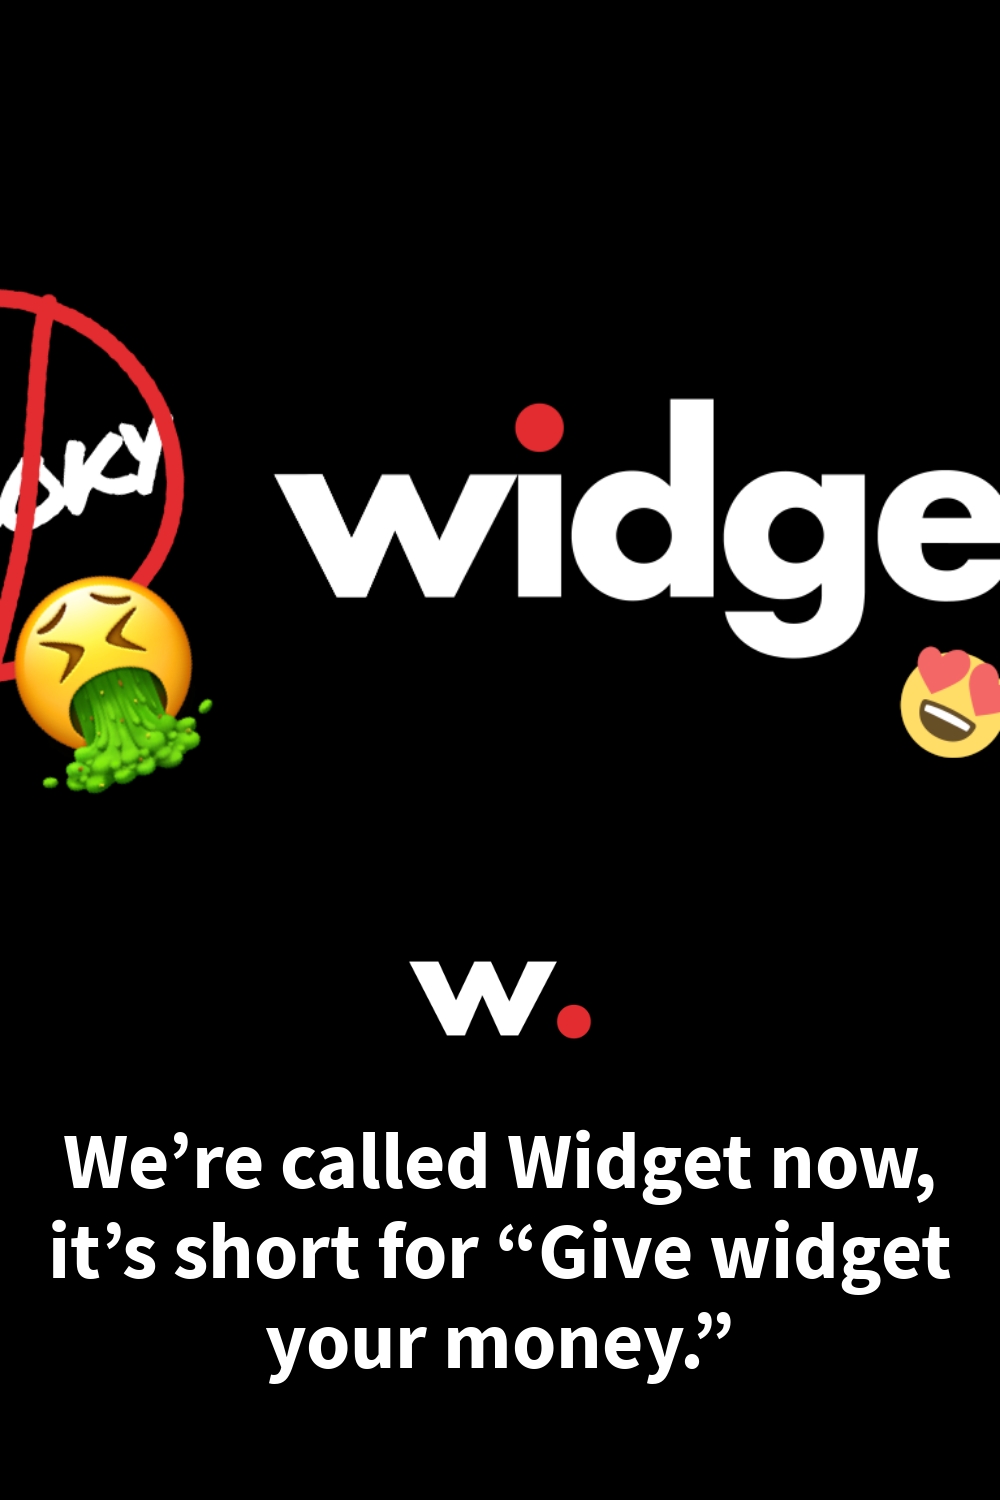 We’re called Widget now, it’s short for “Give widget your money.”